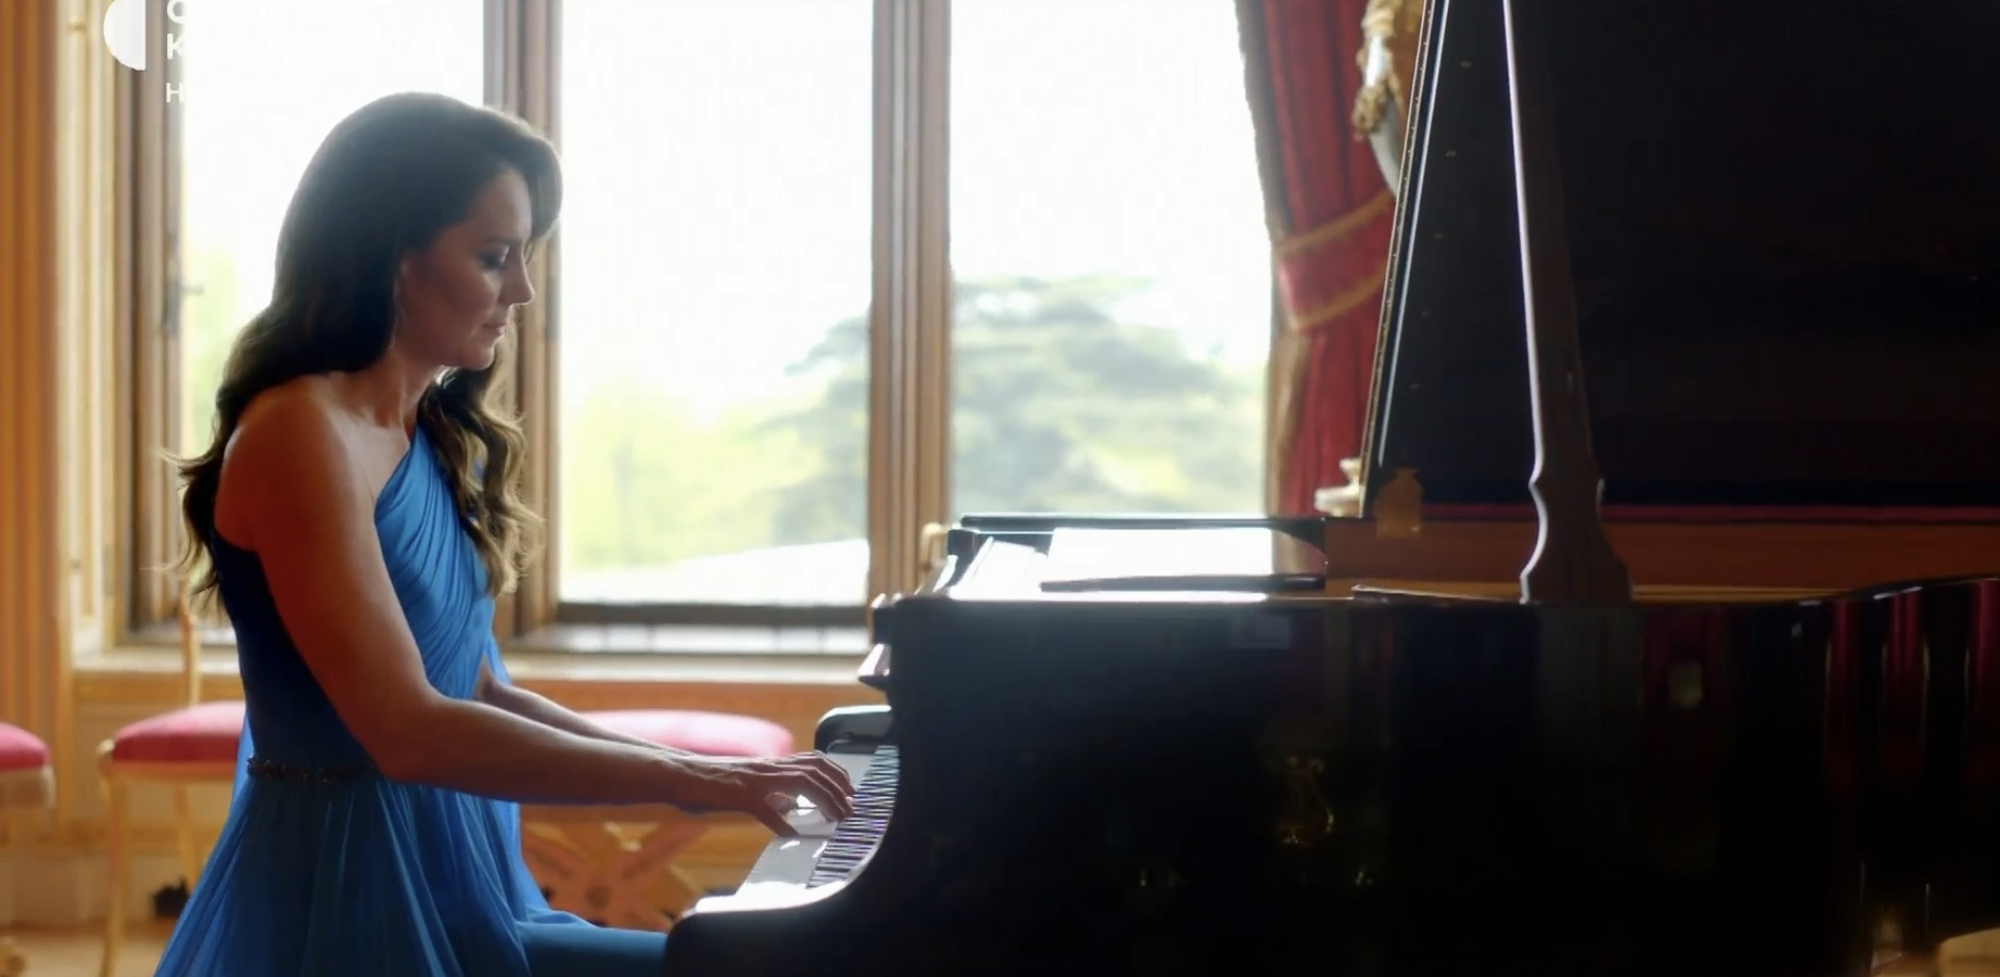 Кейт Миддлтон сыграла "Стефанию" на фортепиано: Kalush Orchestra мощно открыли гранд-финал Евровидения-2023. Фото и видео